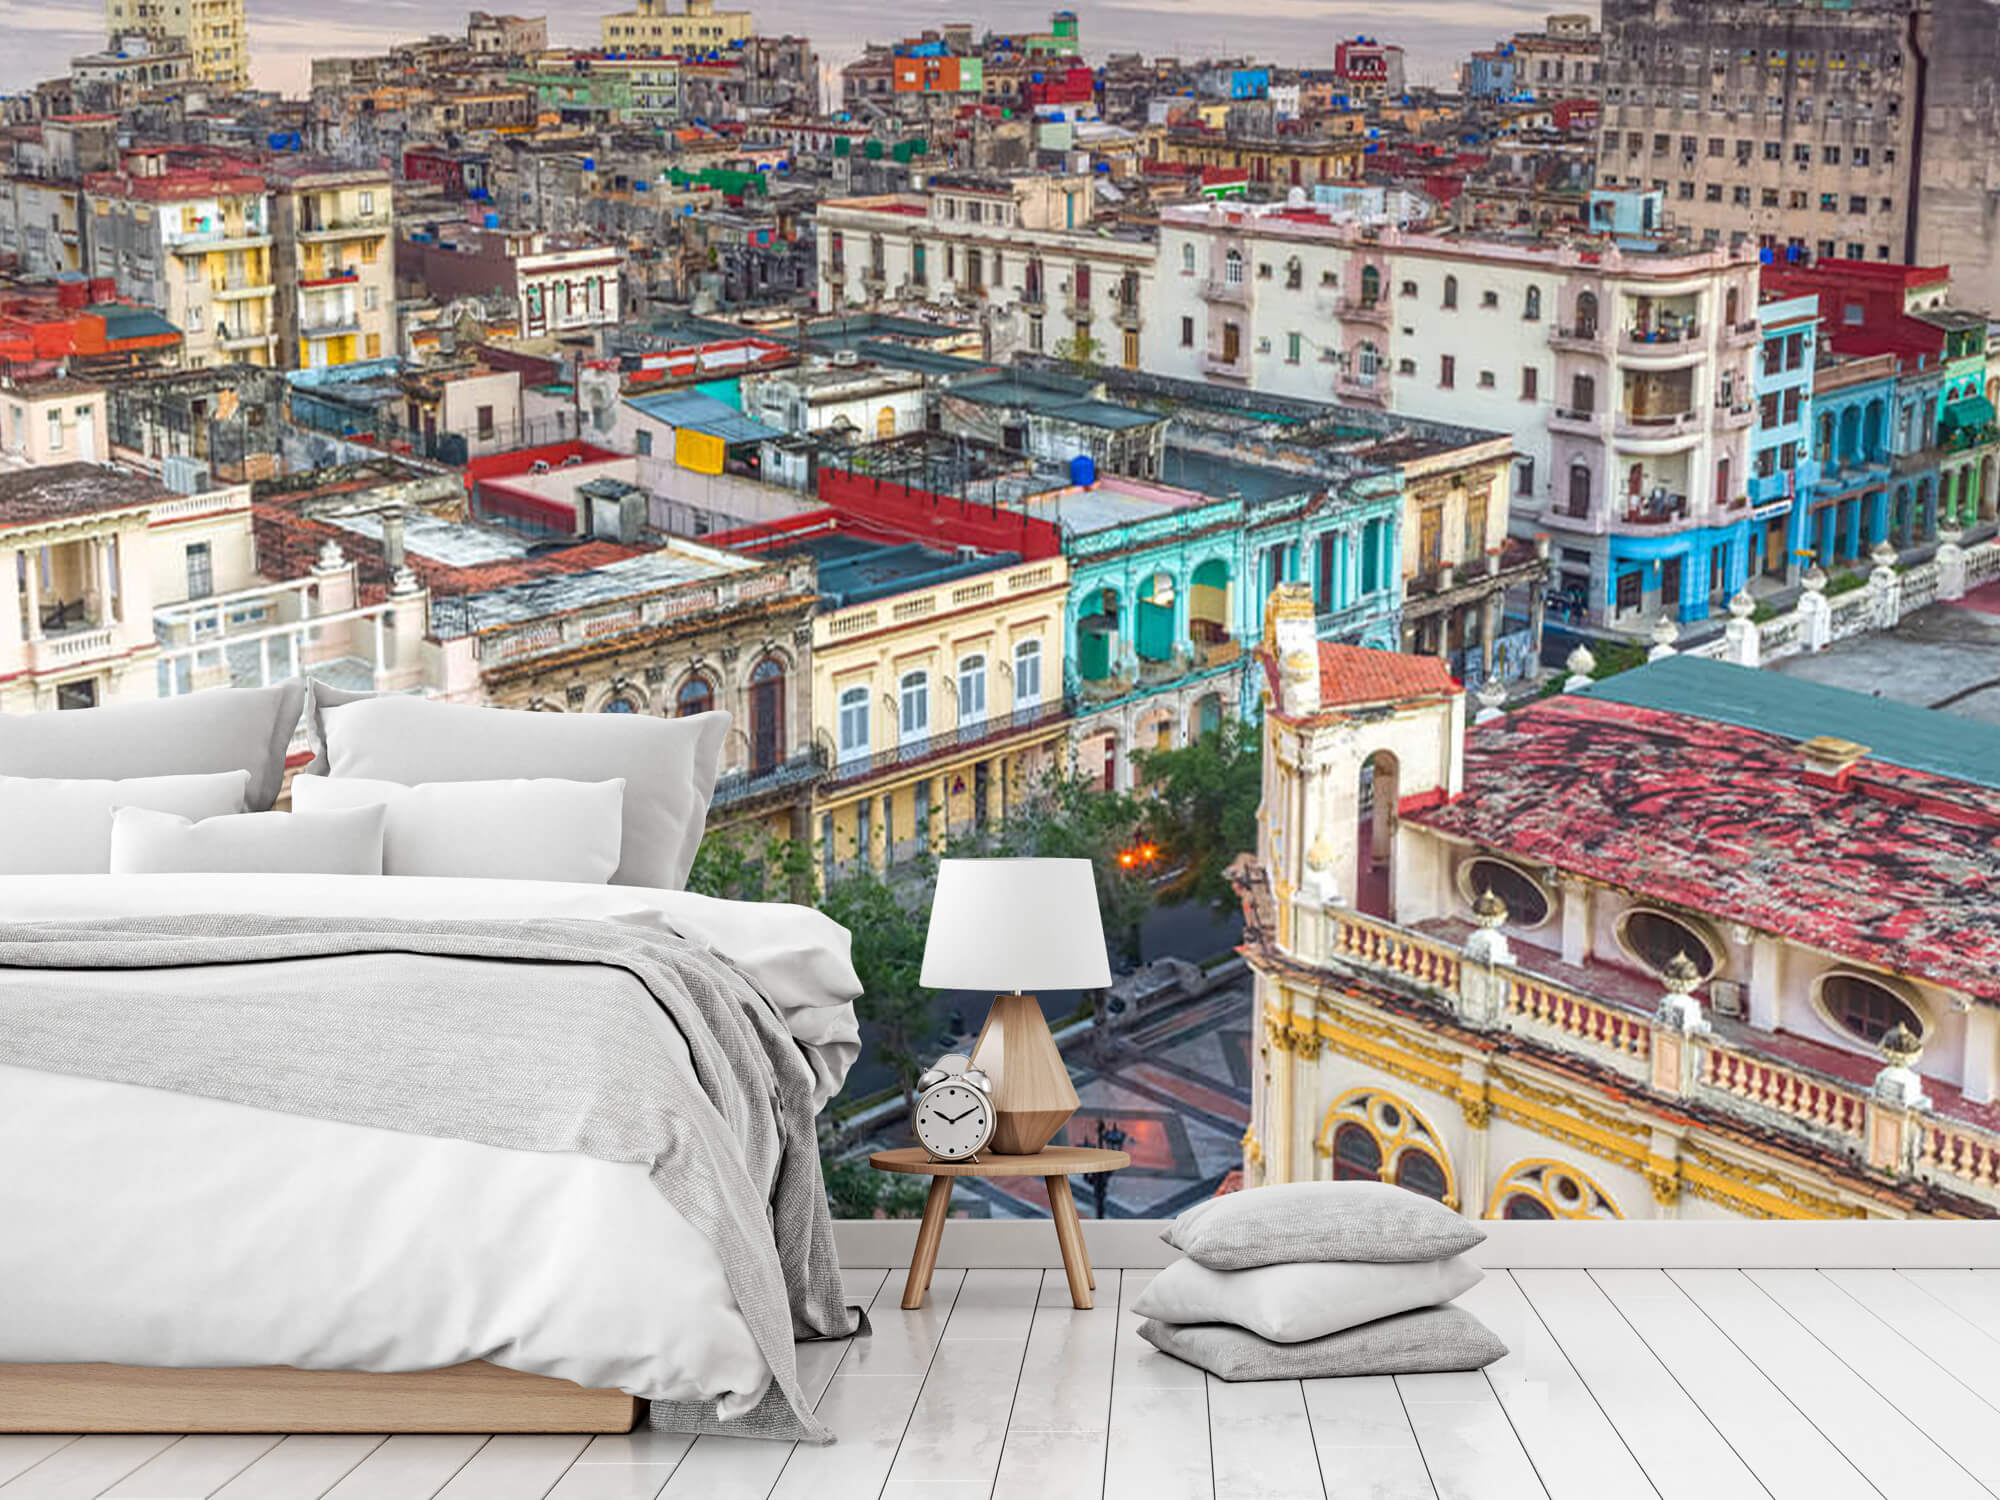  Papel pintado con La Habana desde arriba - Salón 8